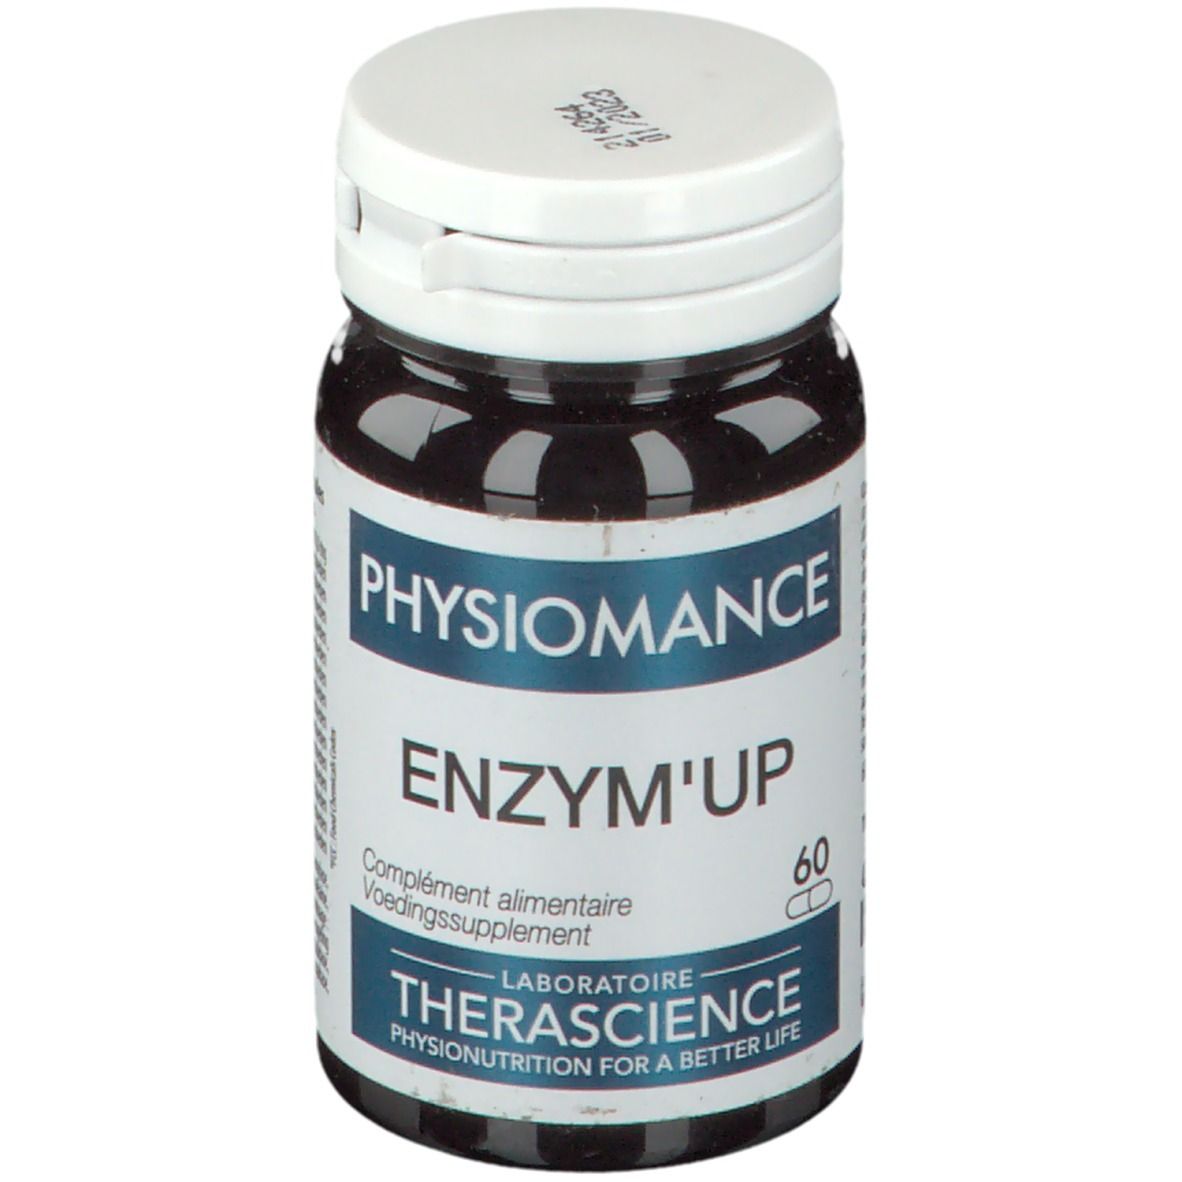 Physiomance Enzym'up